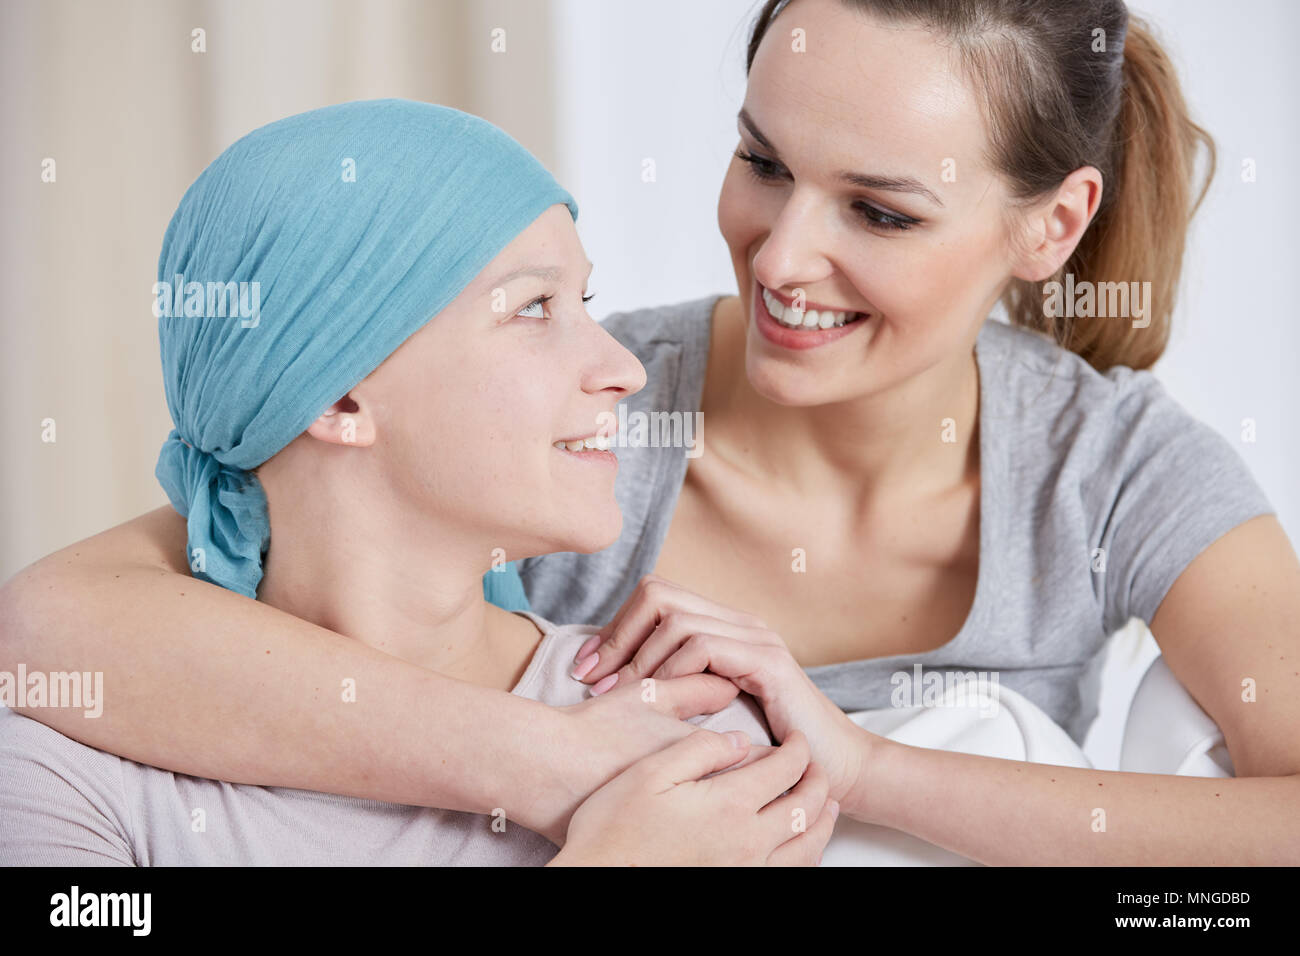 Hoffnungsvoll Krebs Frau mit Kopftuch, im Gespräch mit Freund Stockfoto